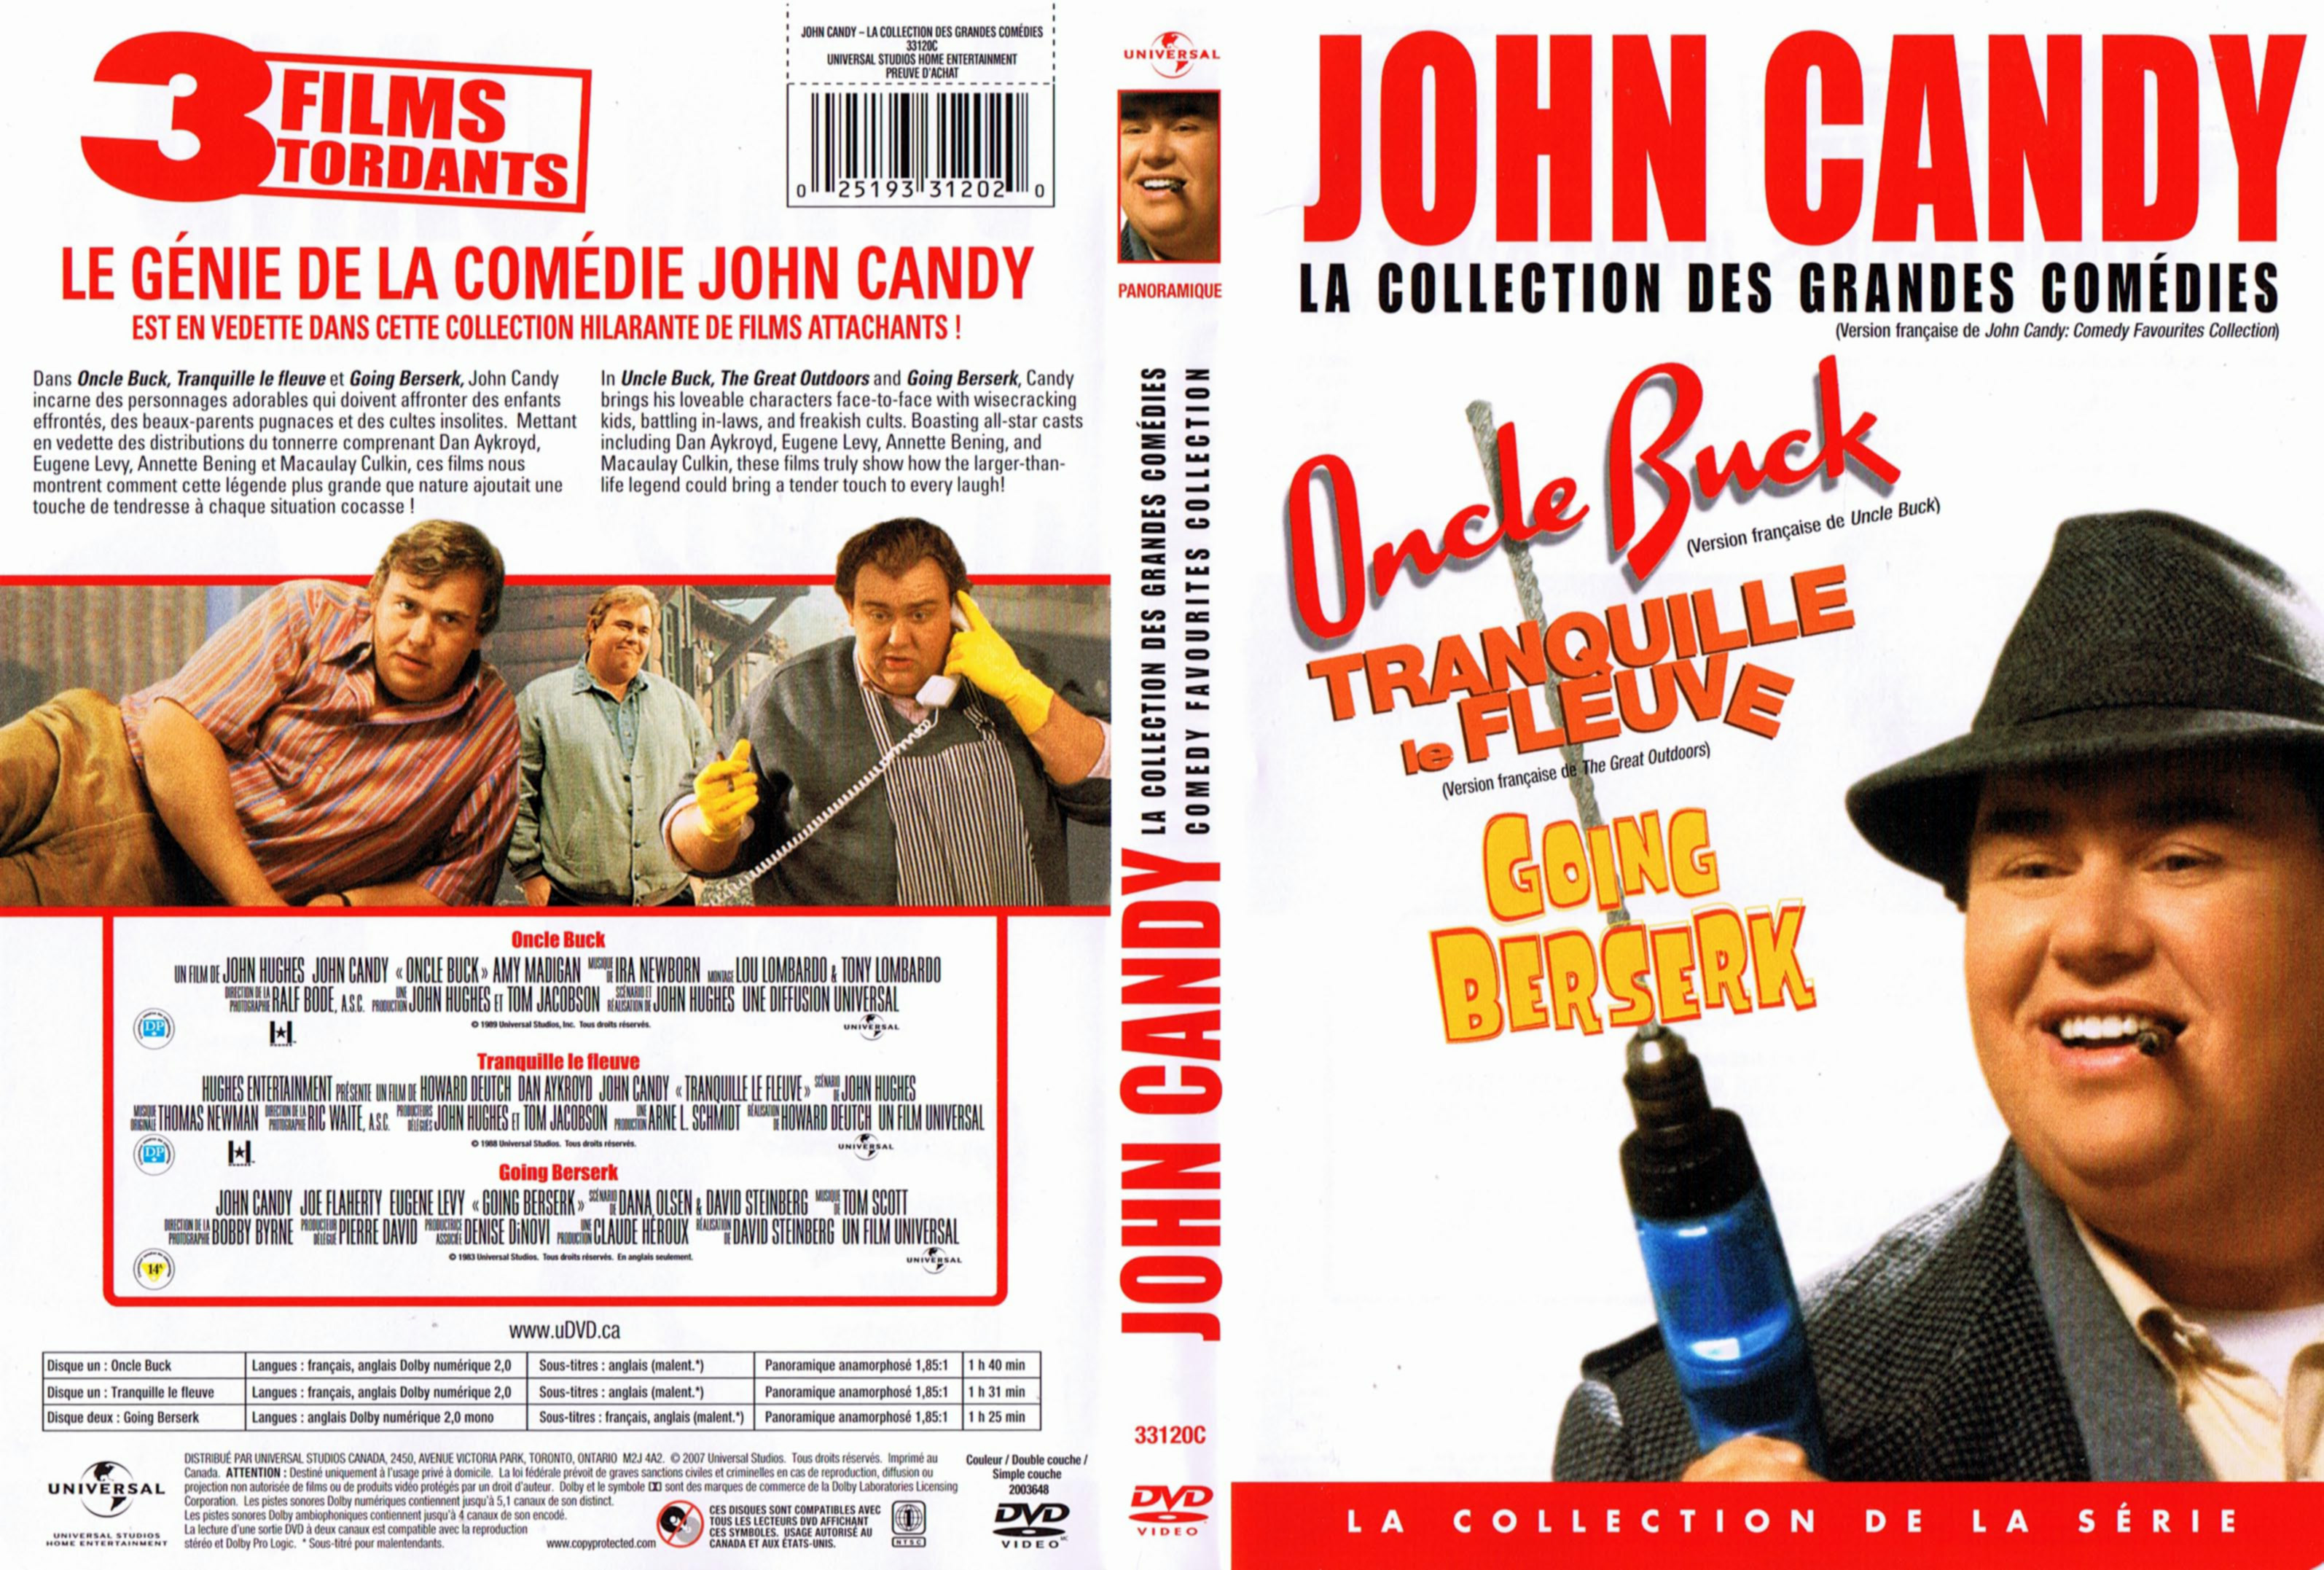 Jaquette DVD John Candy - La collection des grandes comdies